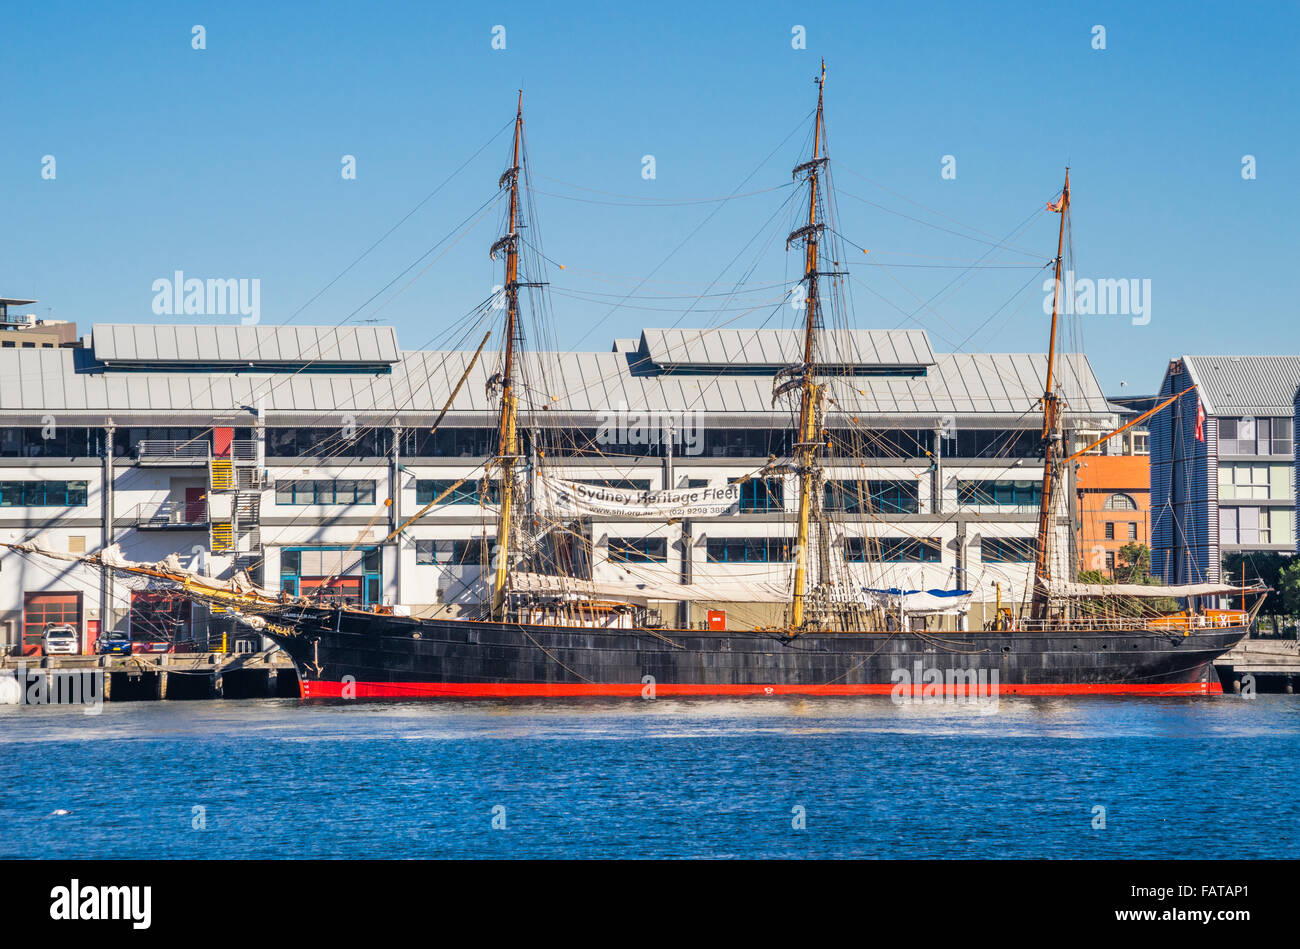 Australia, New South Wales, Sydney, Darling Harbour, de tres mástiles barca de casco de hierro James Craig de la flota del patrimonio de Sydney Foto de stock